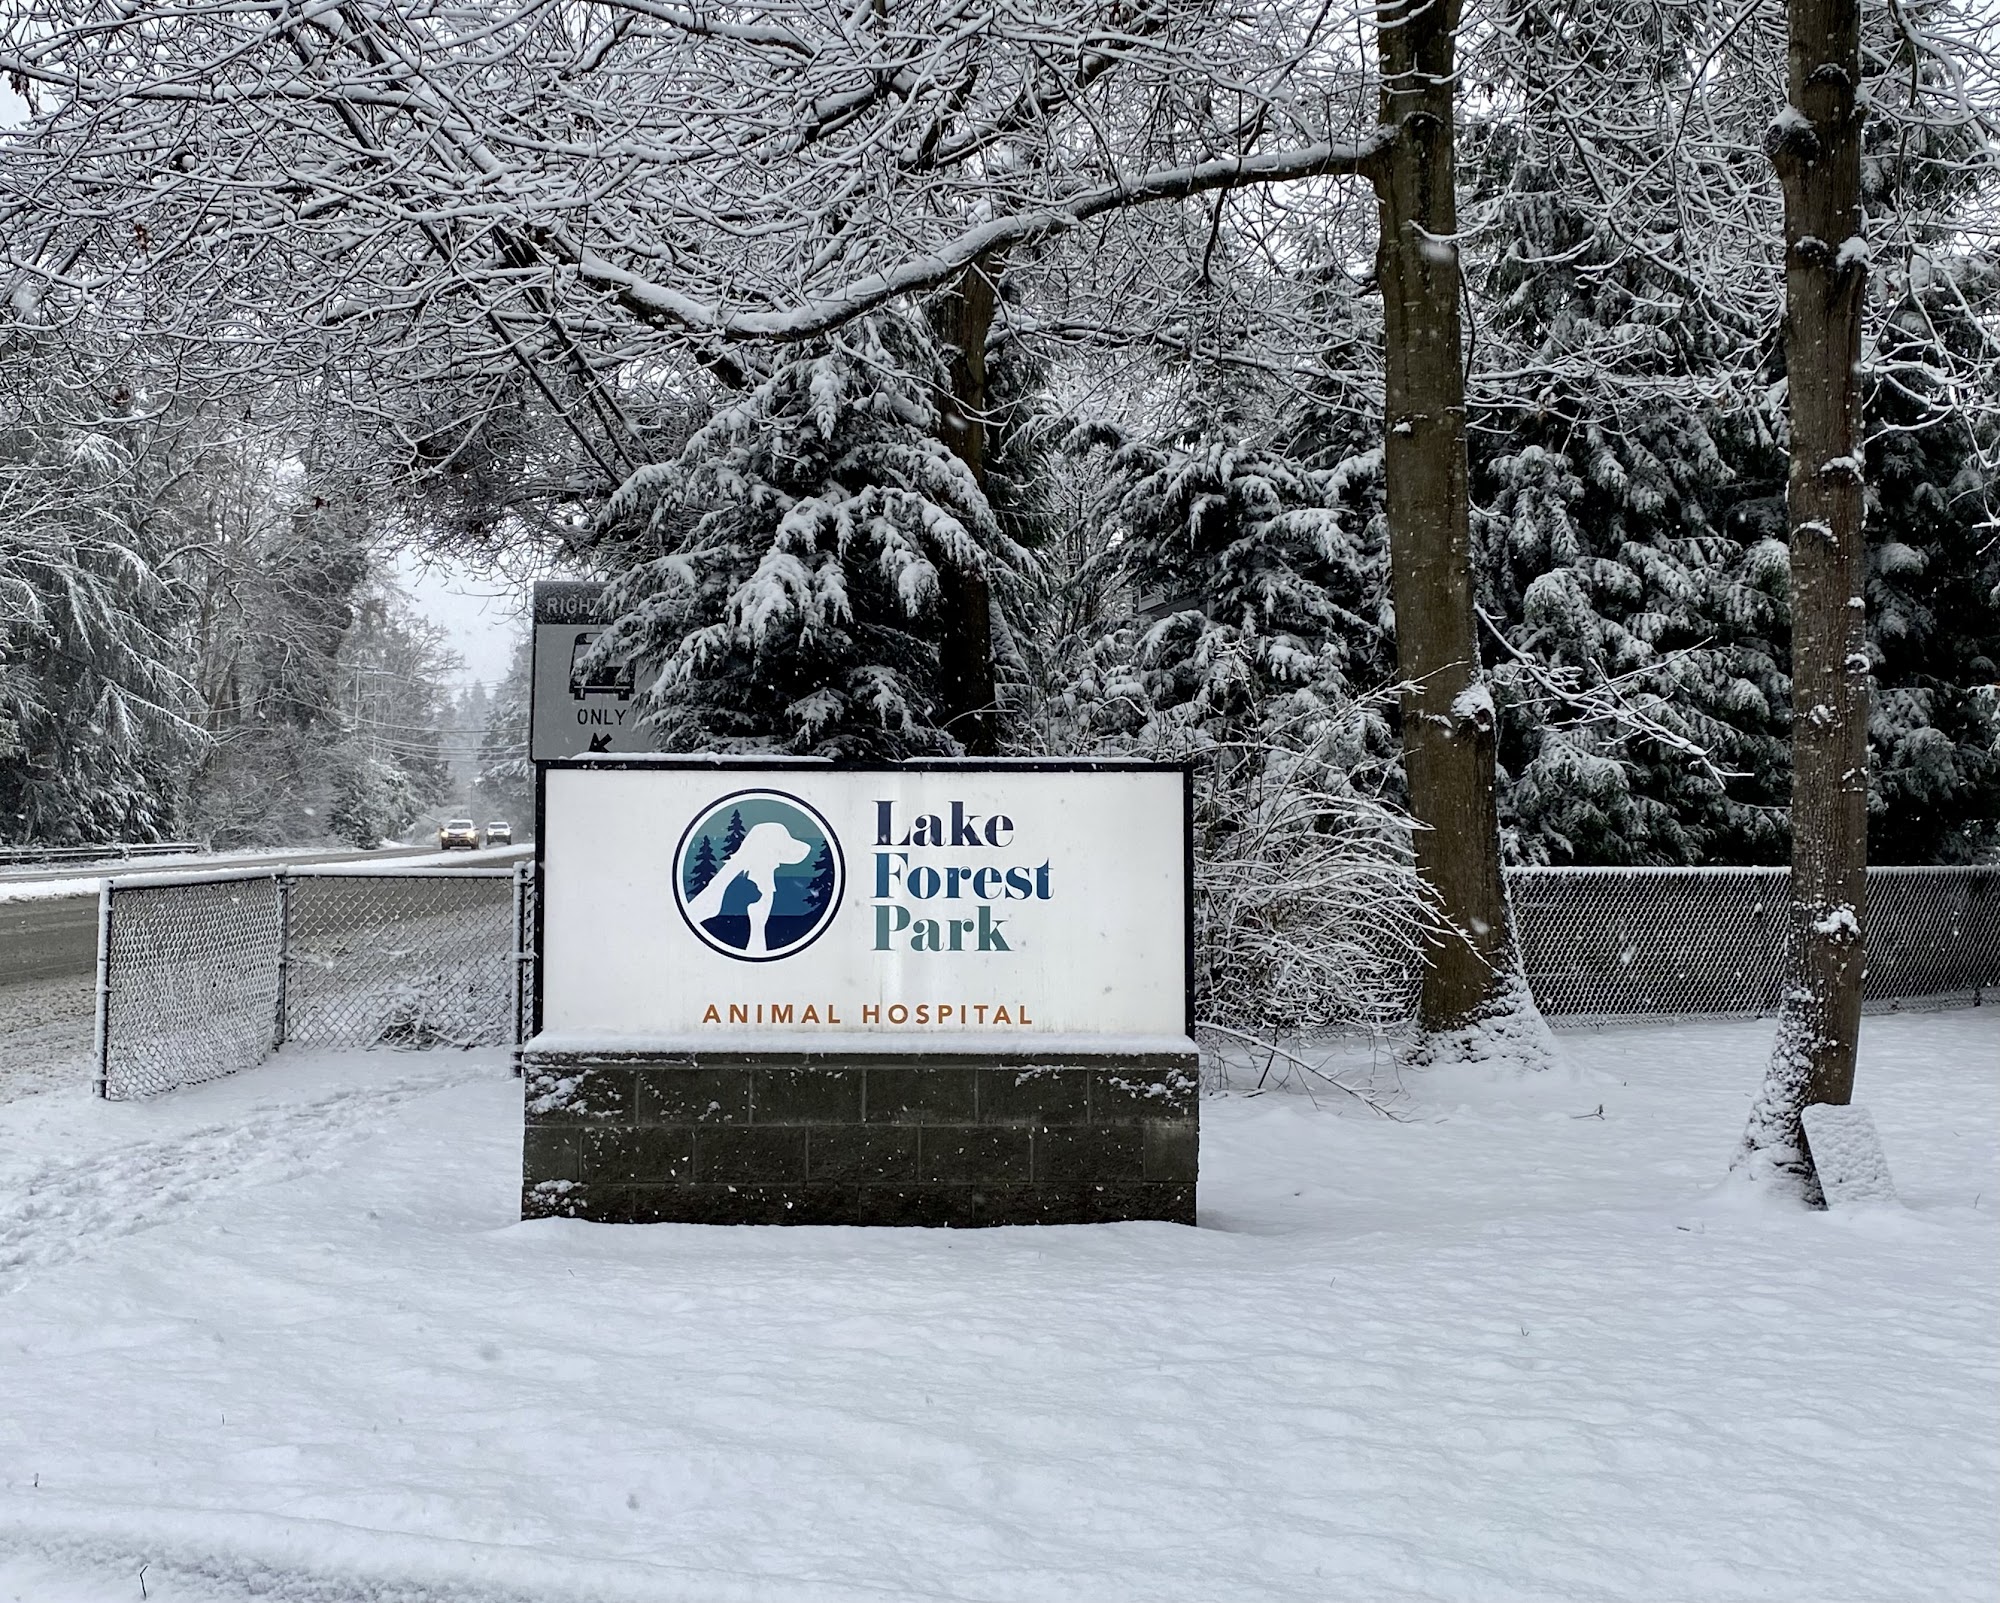 Lake Forest Park Animal Hospital 16815 Bothell Way NE, Lake Forest Park Washington 98155